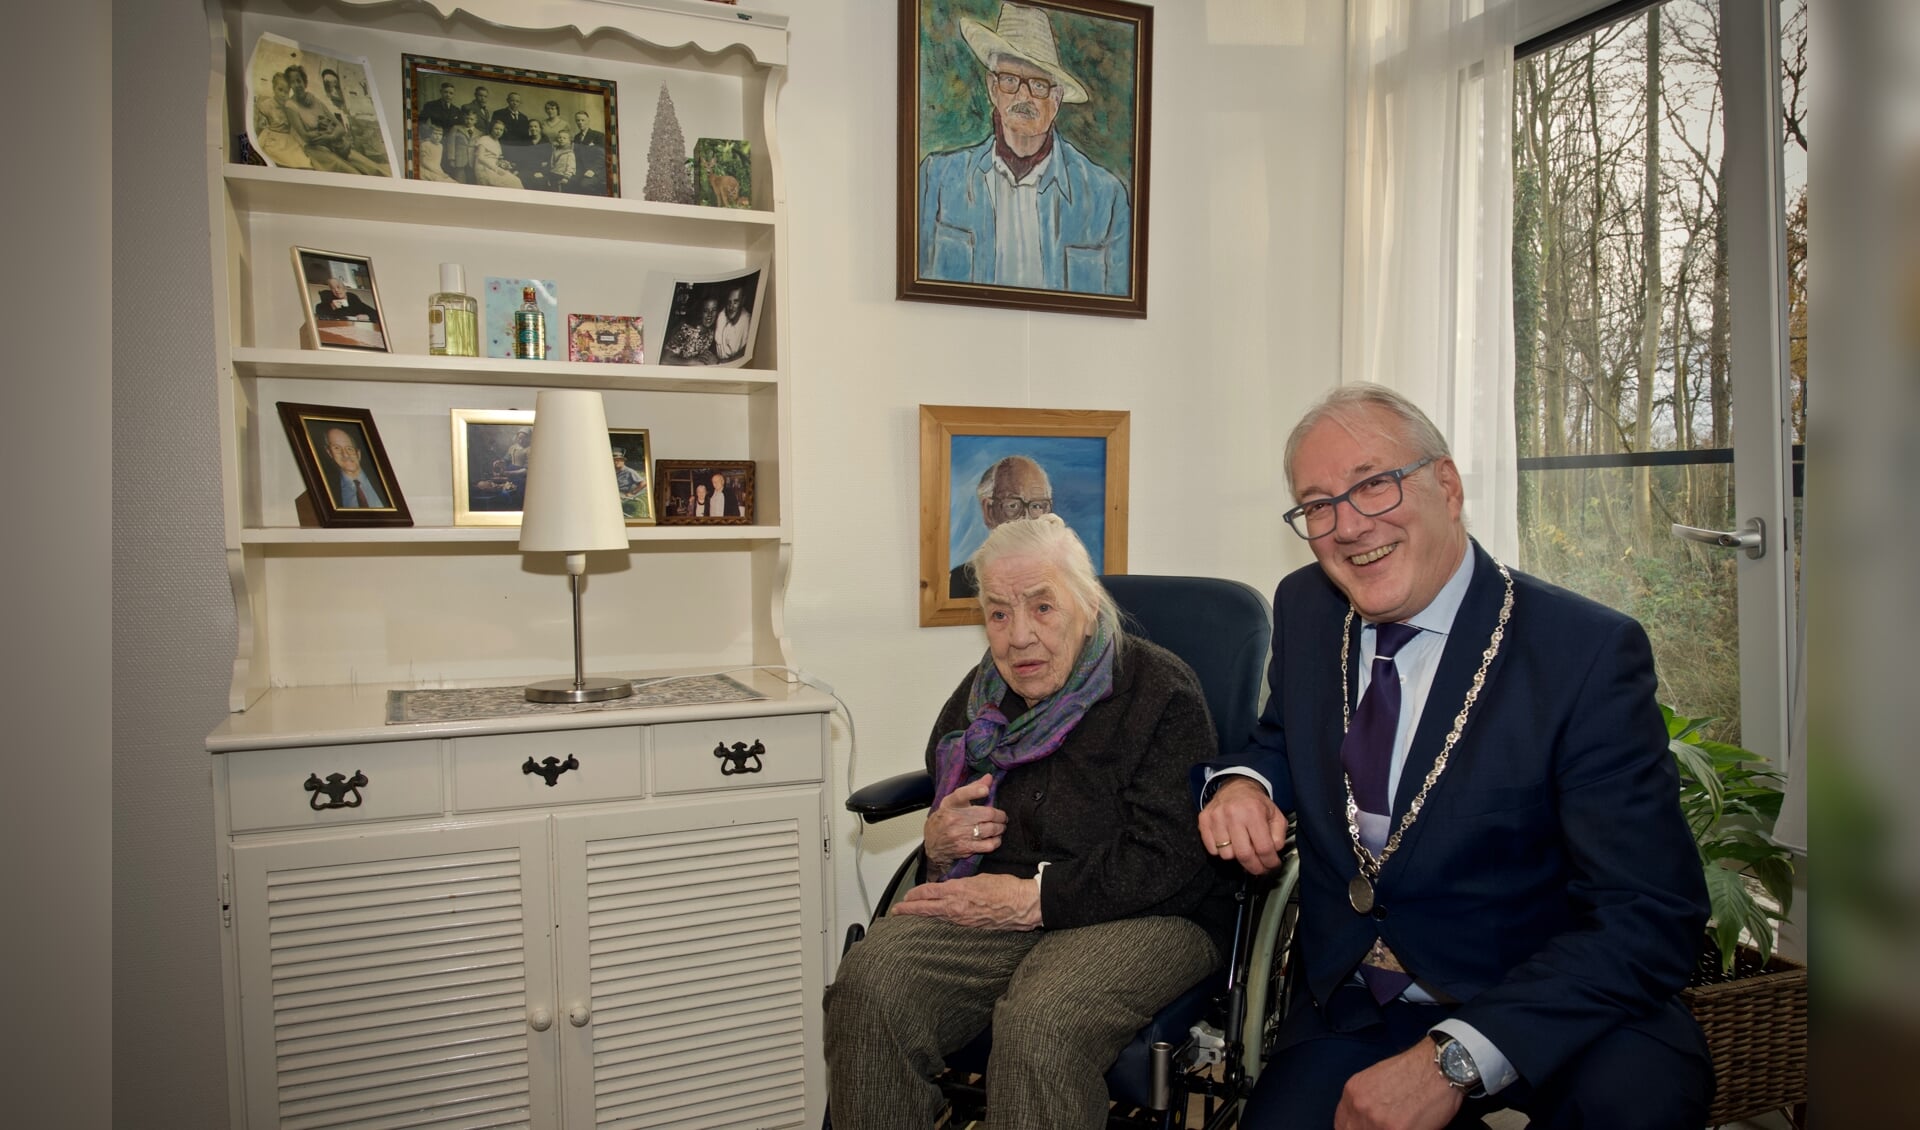 Mevrouw Hulsman samen met burgemeester Hans Romeyn bij een kast met de vele foto's en schilderijen geschilderd door meneer Hulsman.